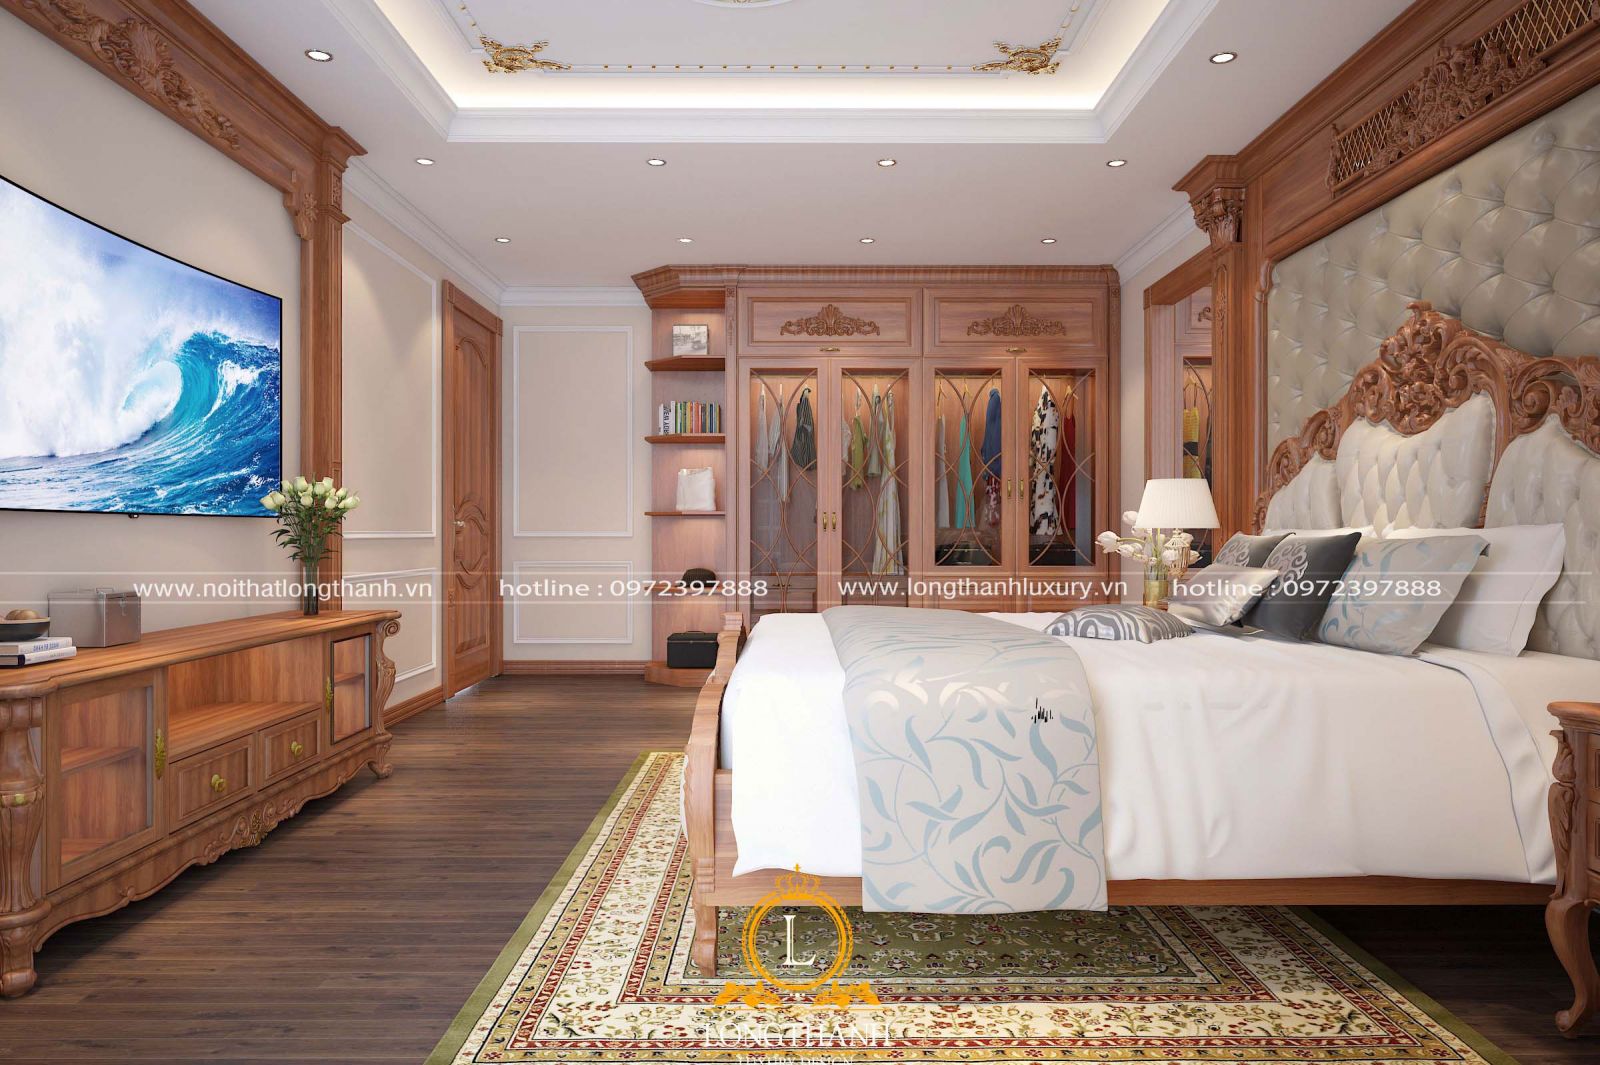 Từ đồ nội thất đến cửa đều được thiết kế đồng màu, tăng thêm vẻ đẹp cho cả căn phòng